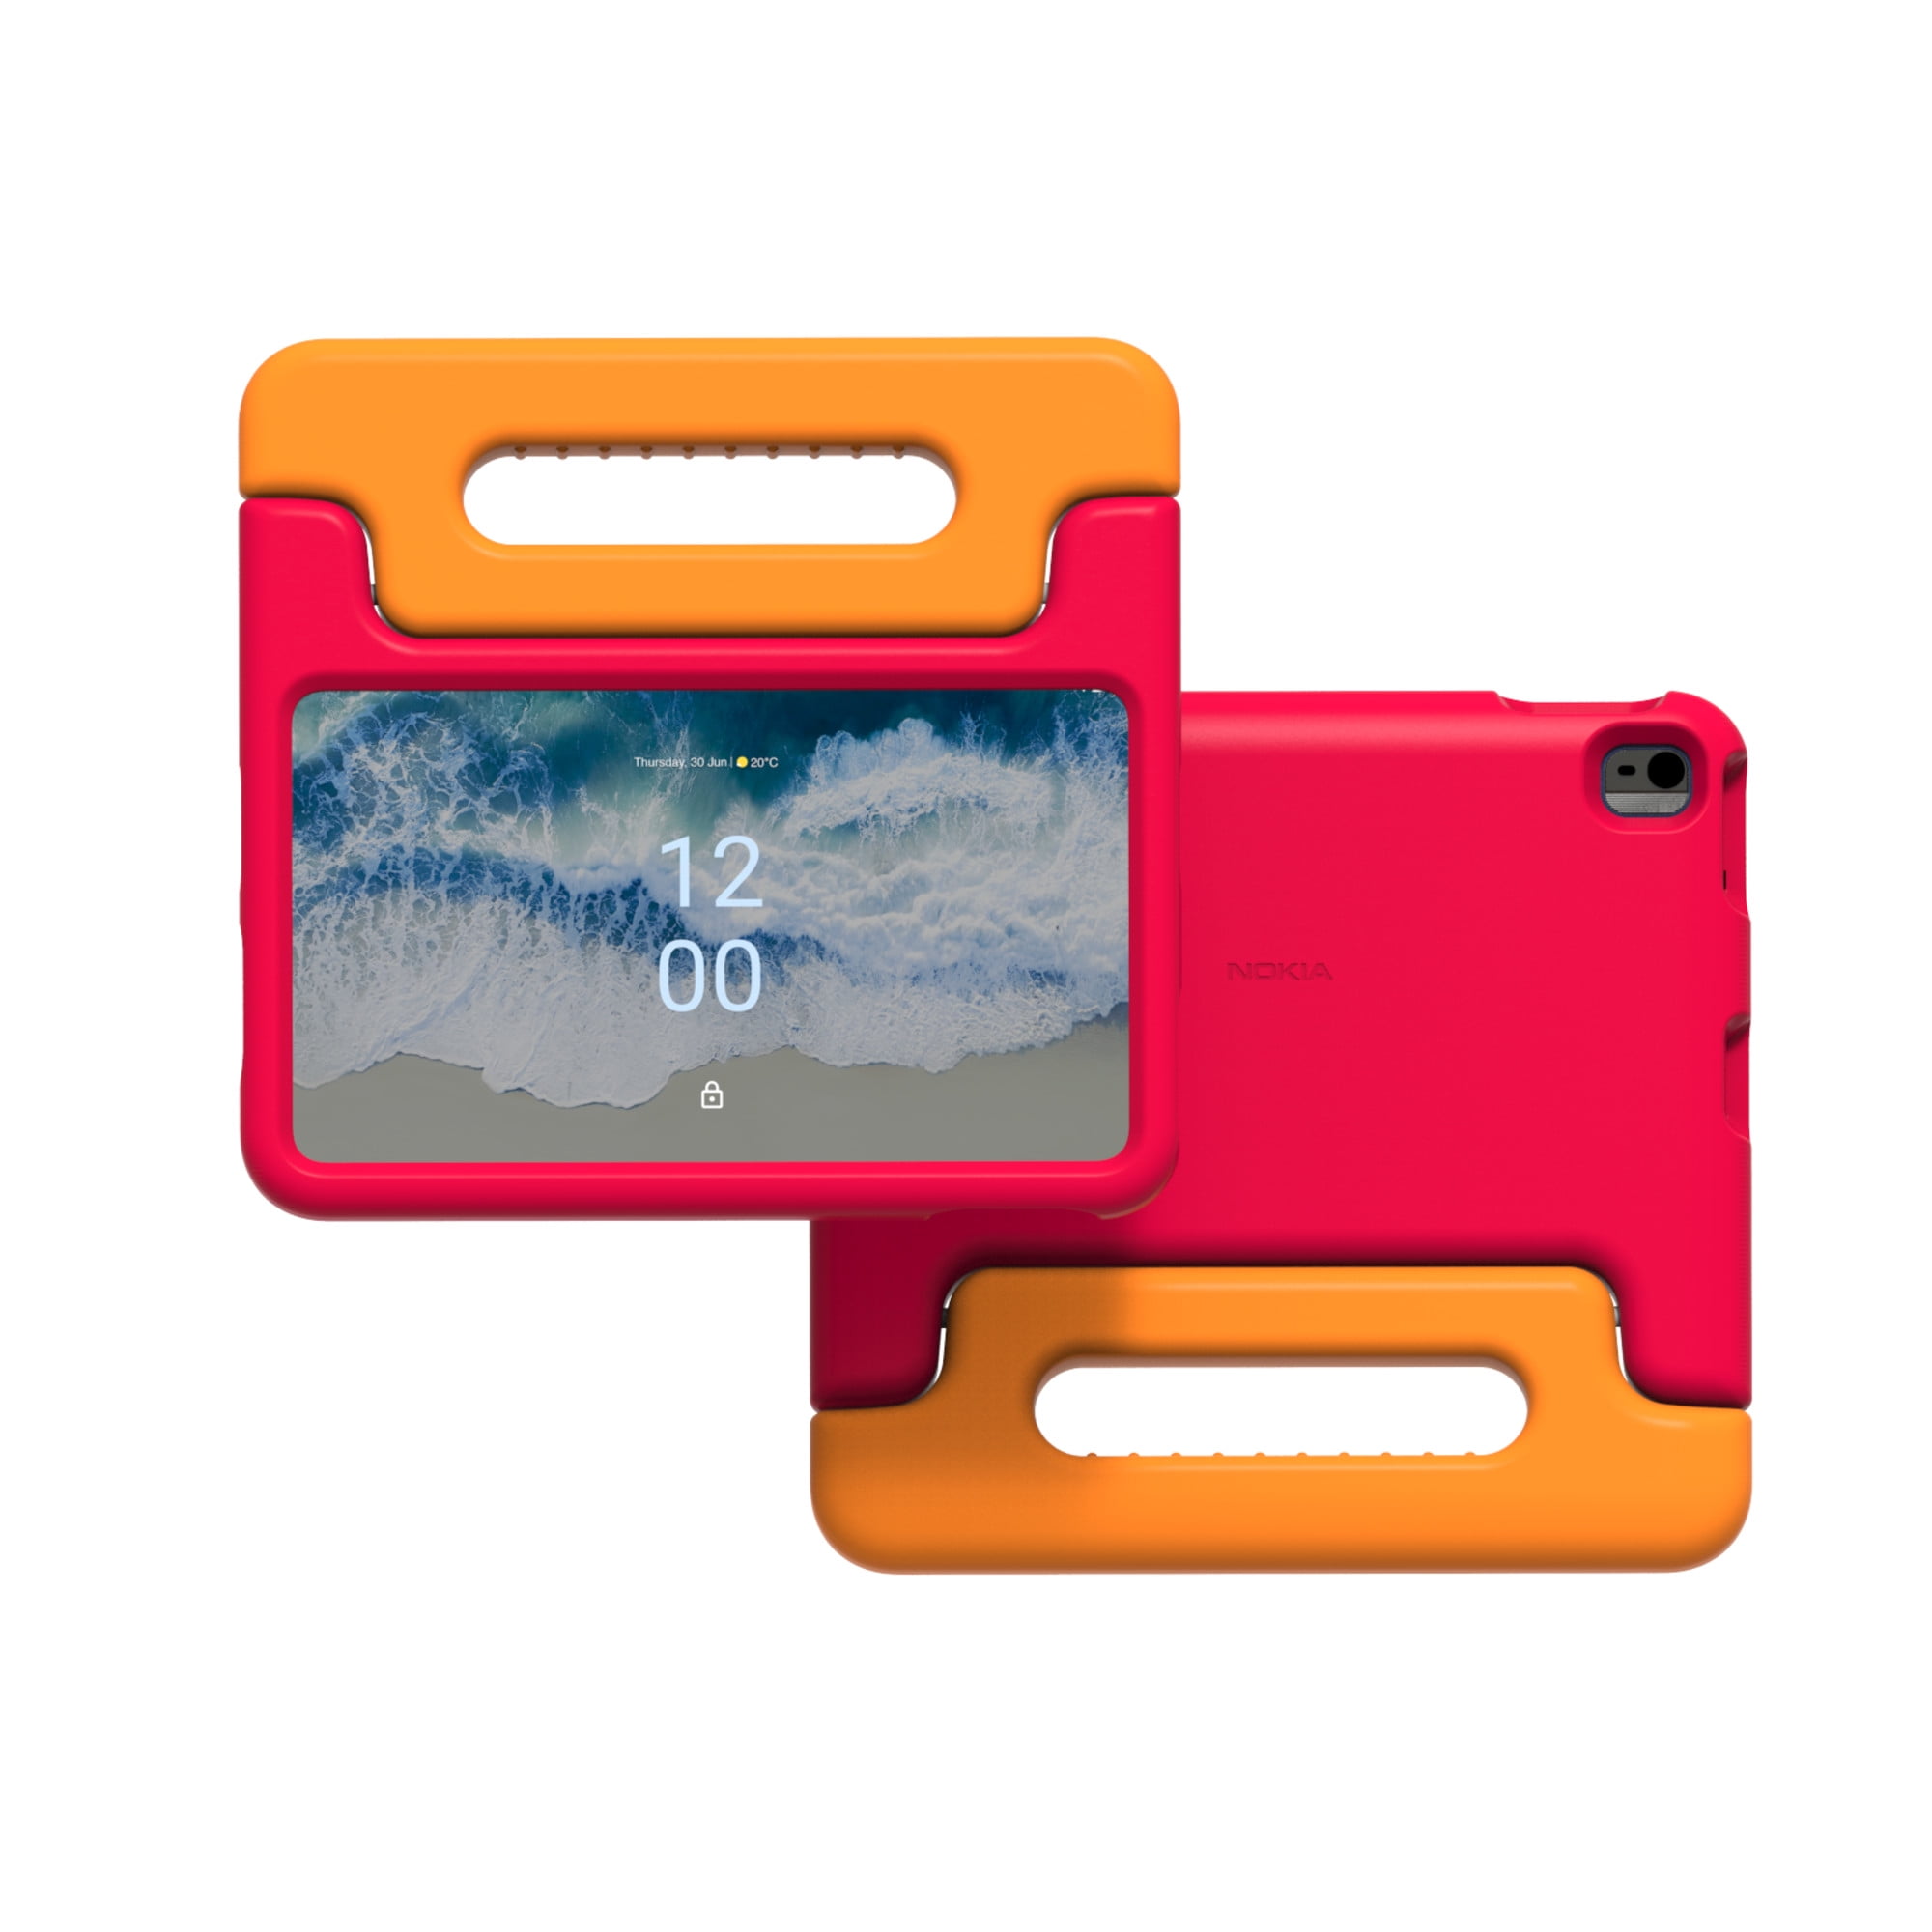 Nokia T10 Kids Edition, il tablet pensato per tutti i bambini